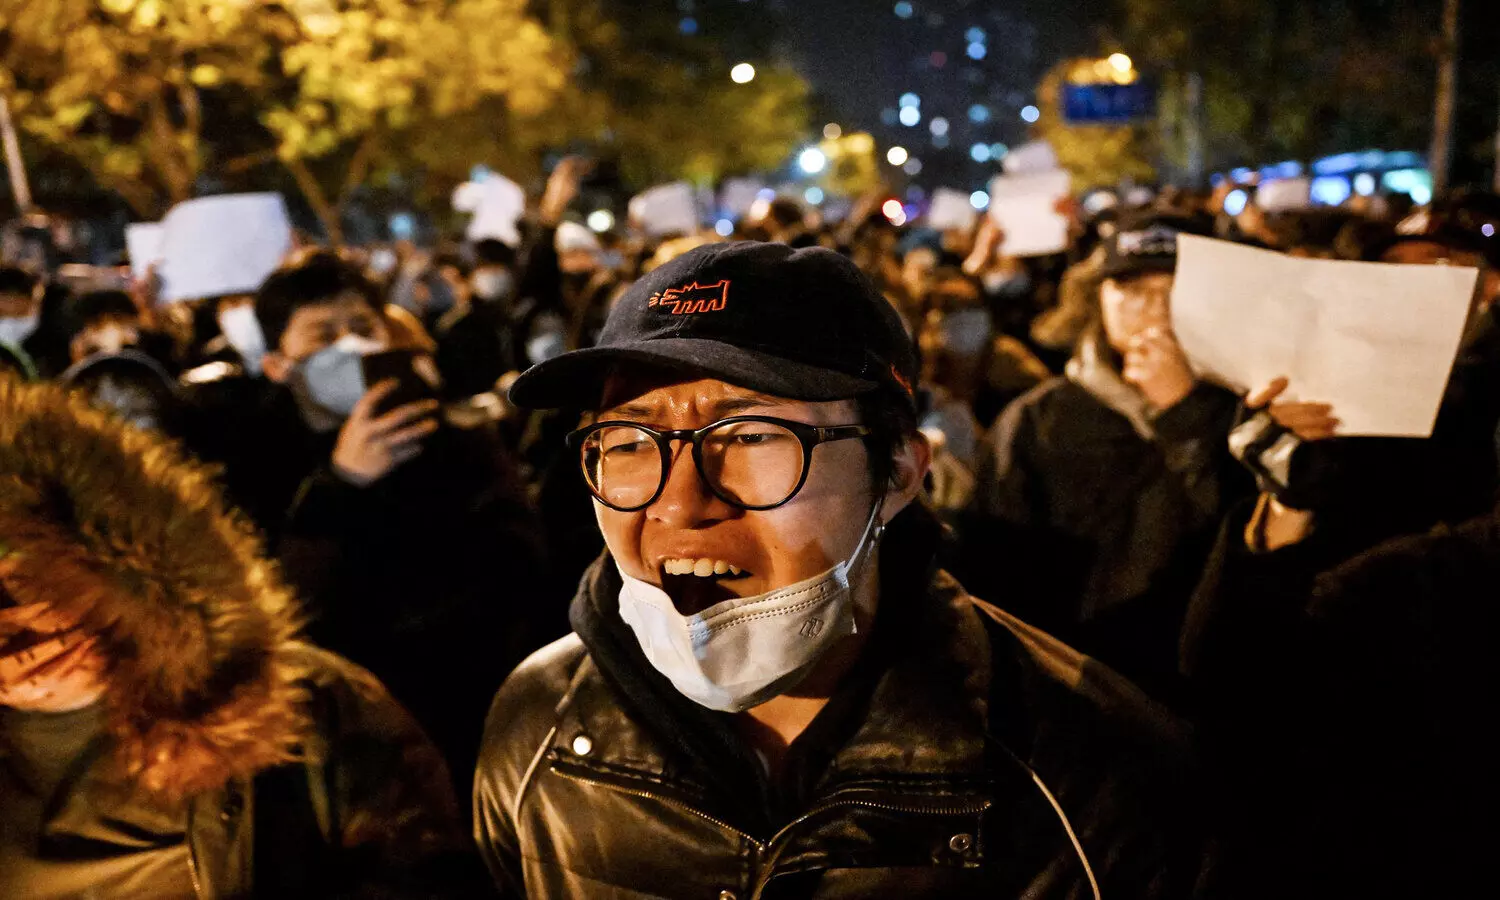 China Covid Protest